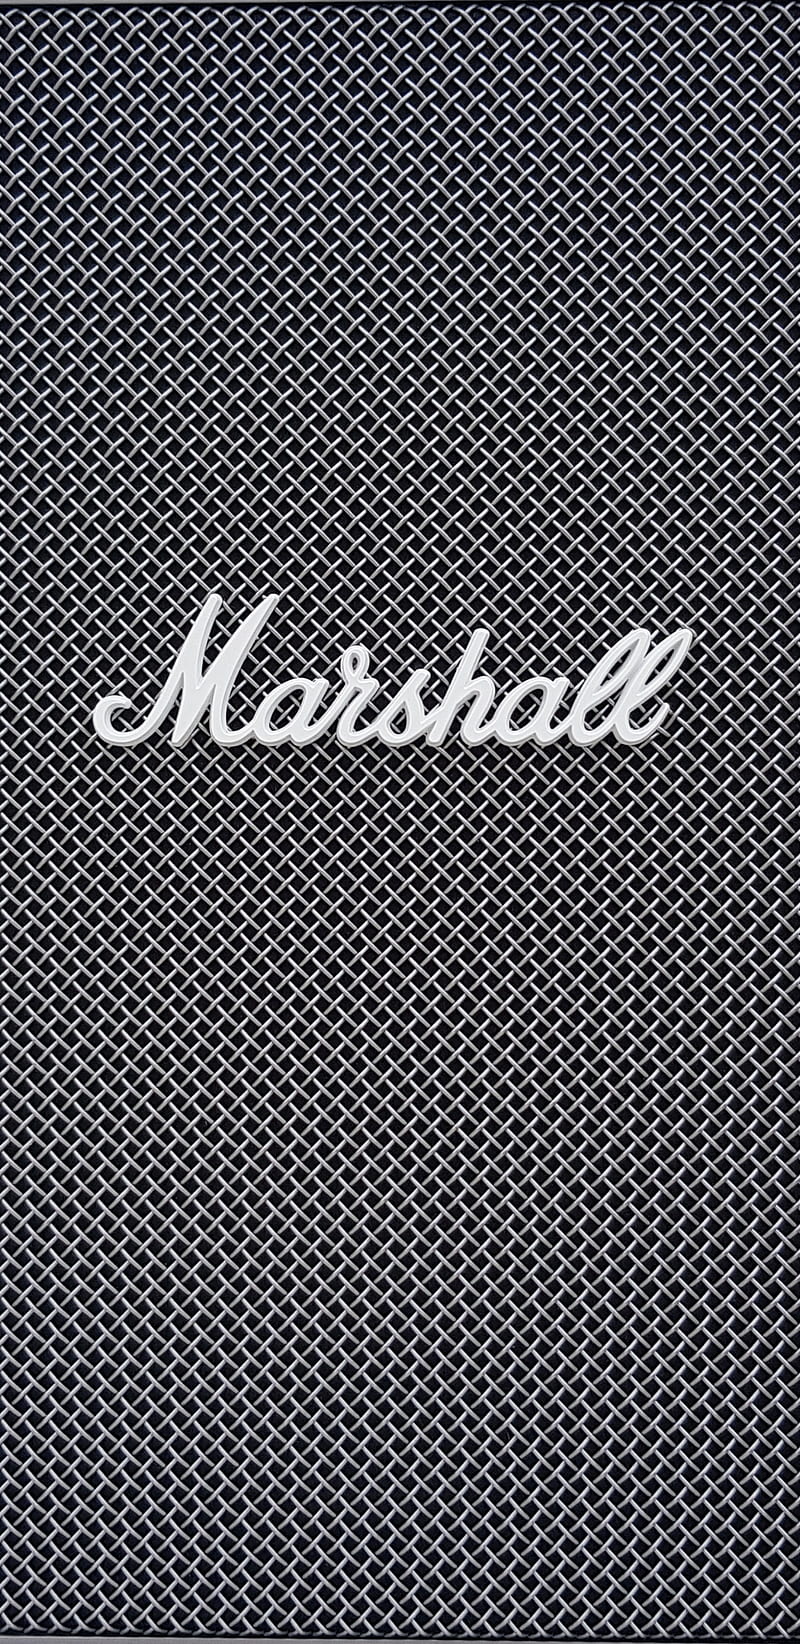 HD wallpaper: gray Marshall amplifier, home decor, logo, trademark, symbol  | Wallpaper Flare